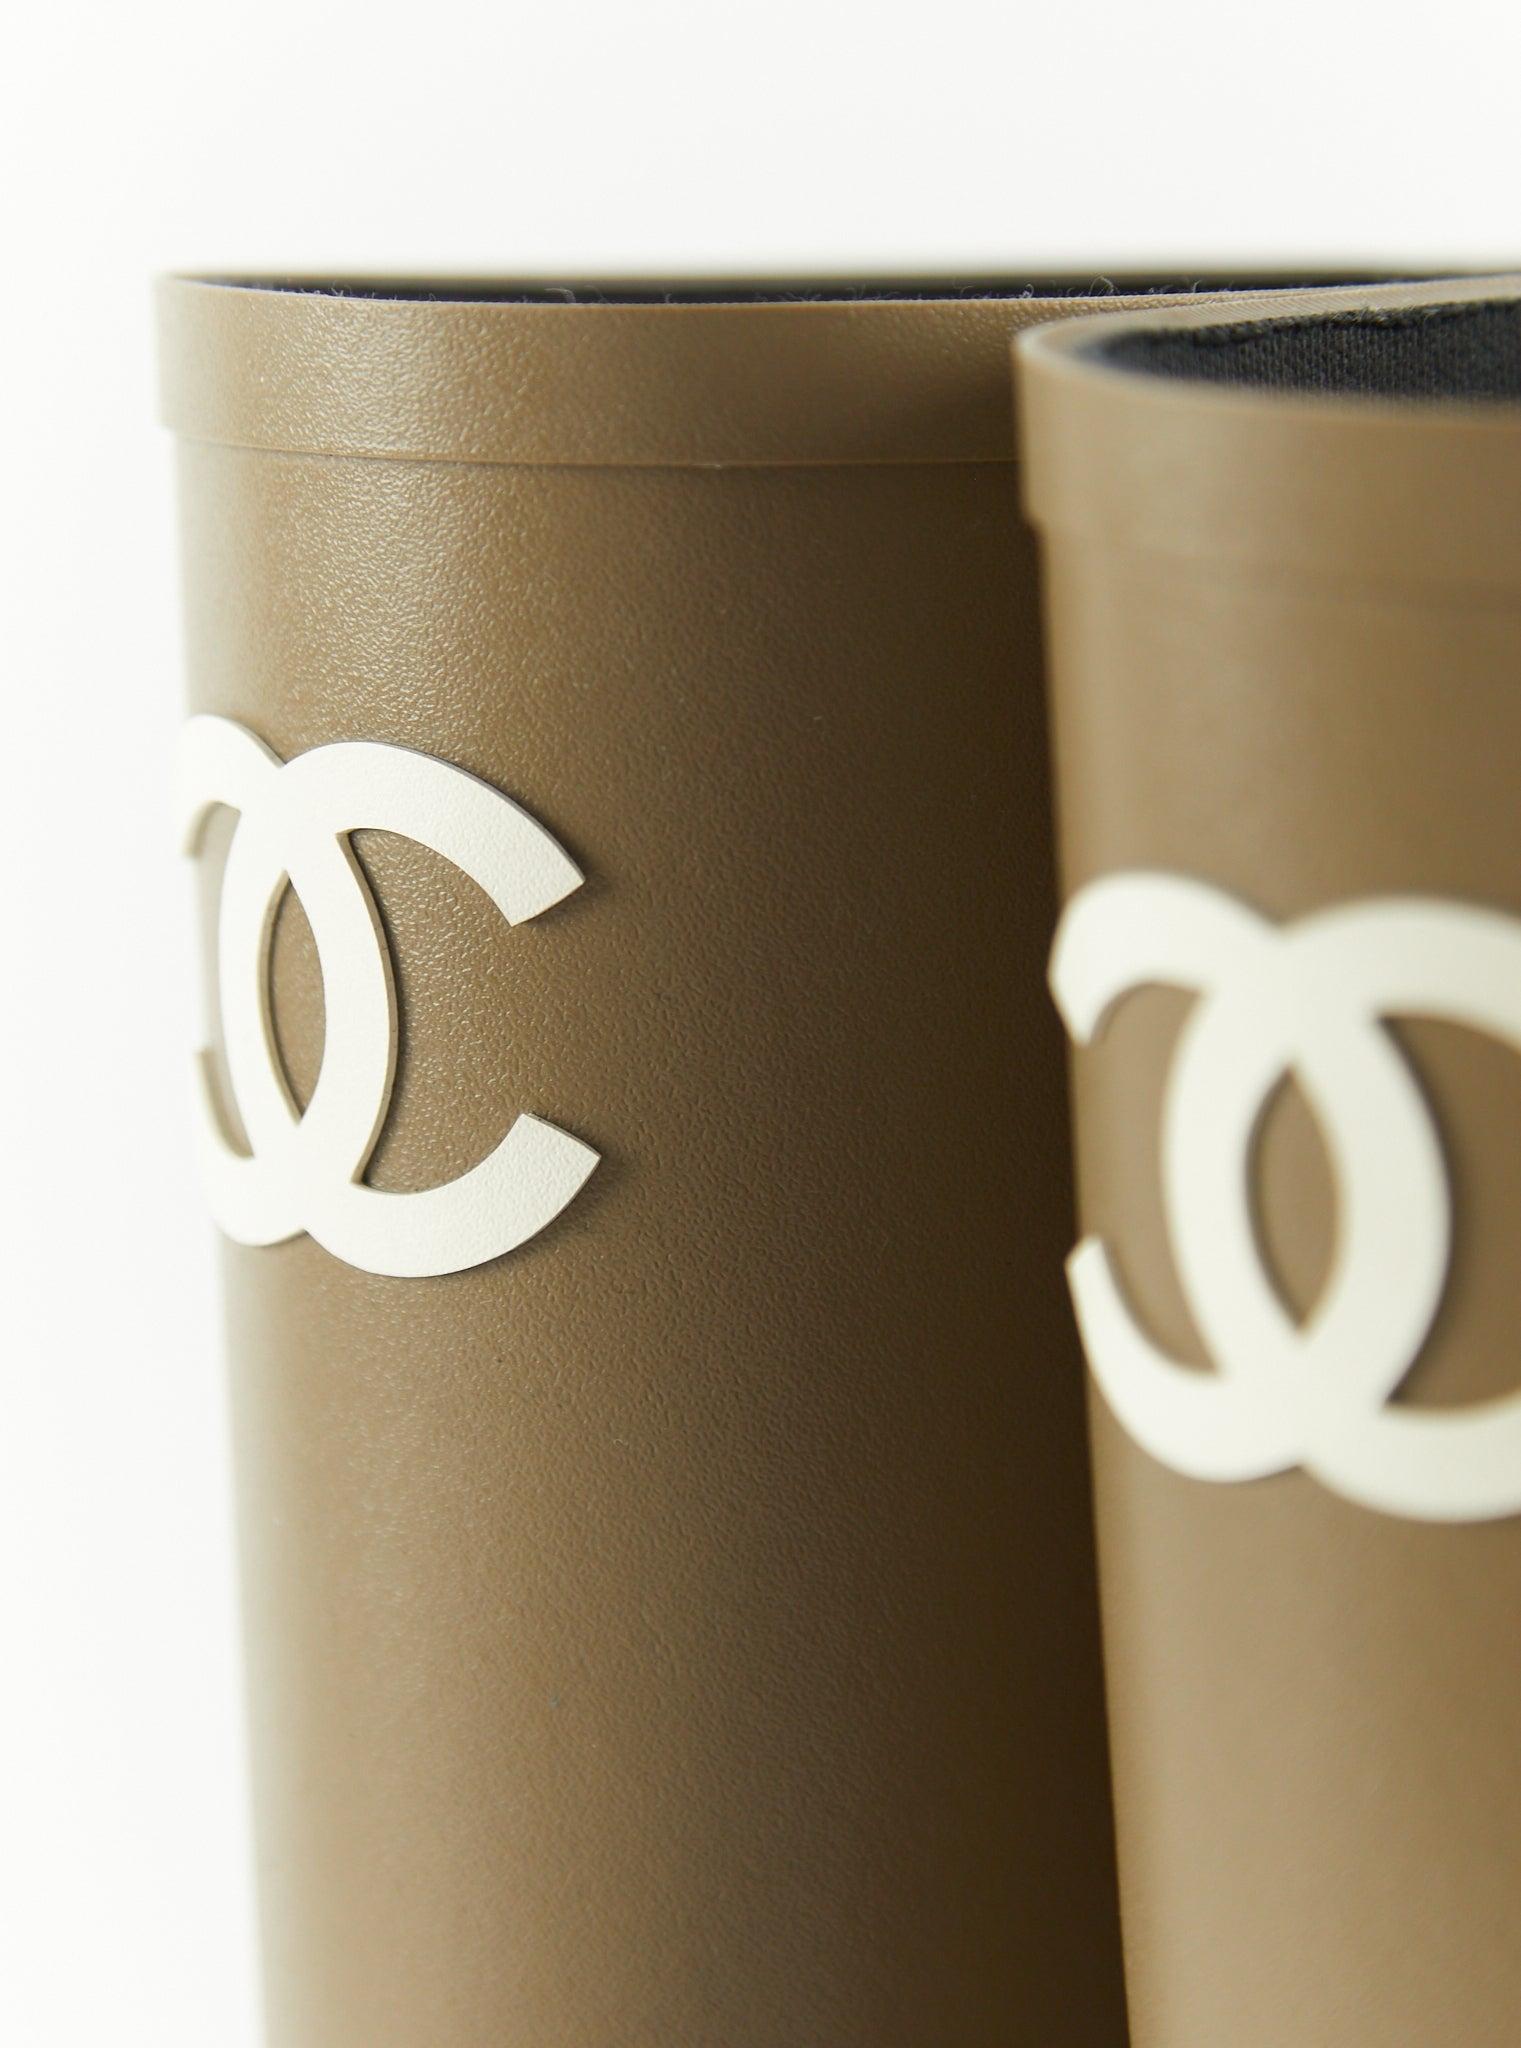 Chanel Gummistiefel in Khaki

Absatzhöhe: 25 mm 

Größe 39